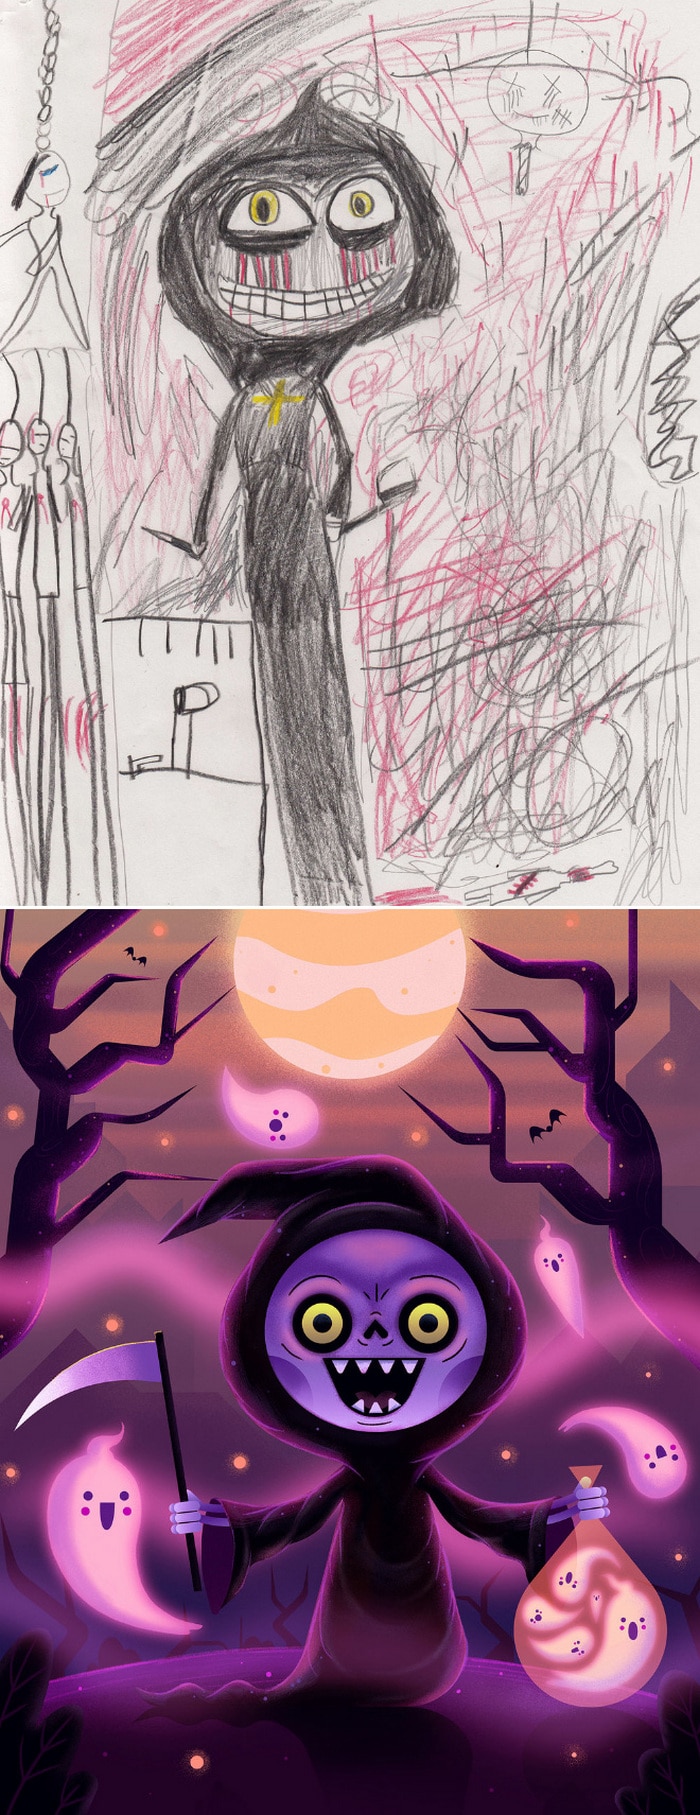 Projeto Monstro - Crianças desenham monstros e artistas recriam com sua arte 21